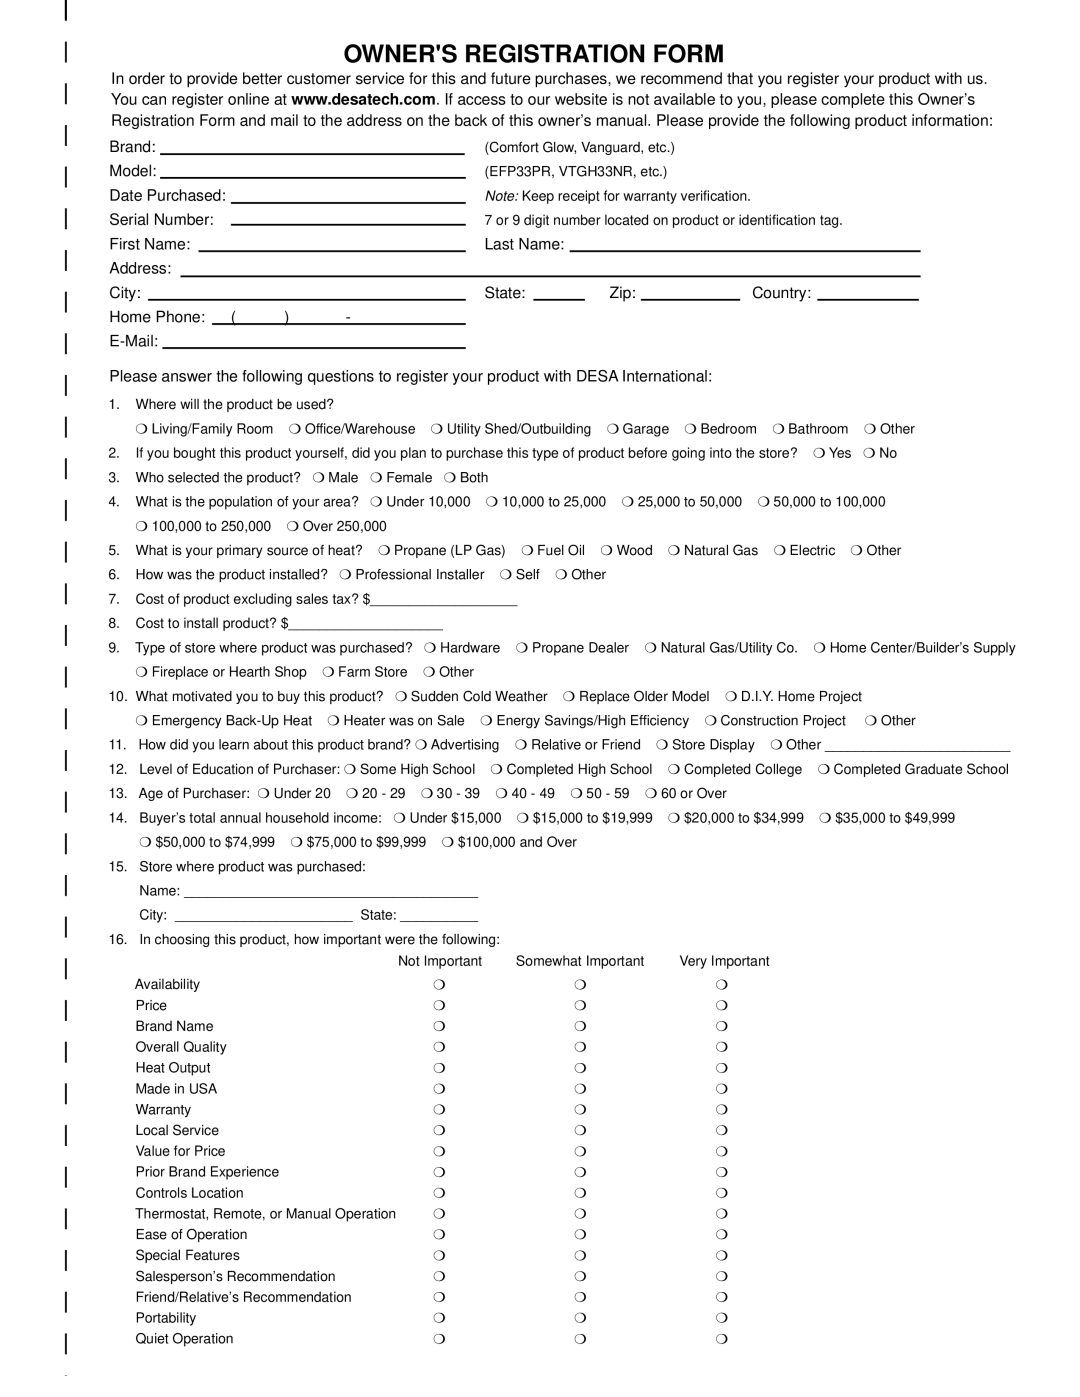 Desa VMH26PRA, EFS26PR, VMH10TNB, VMH26NRA installation manual Owners Registration Form 